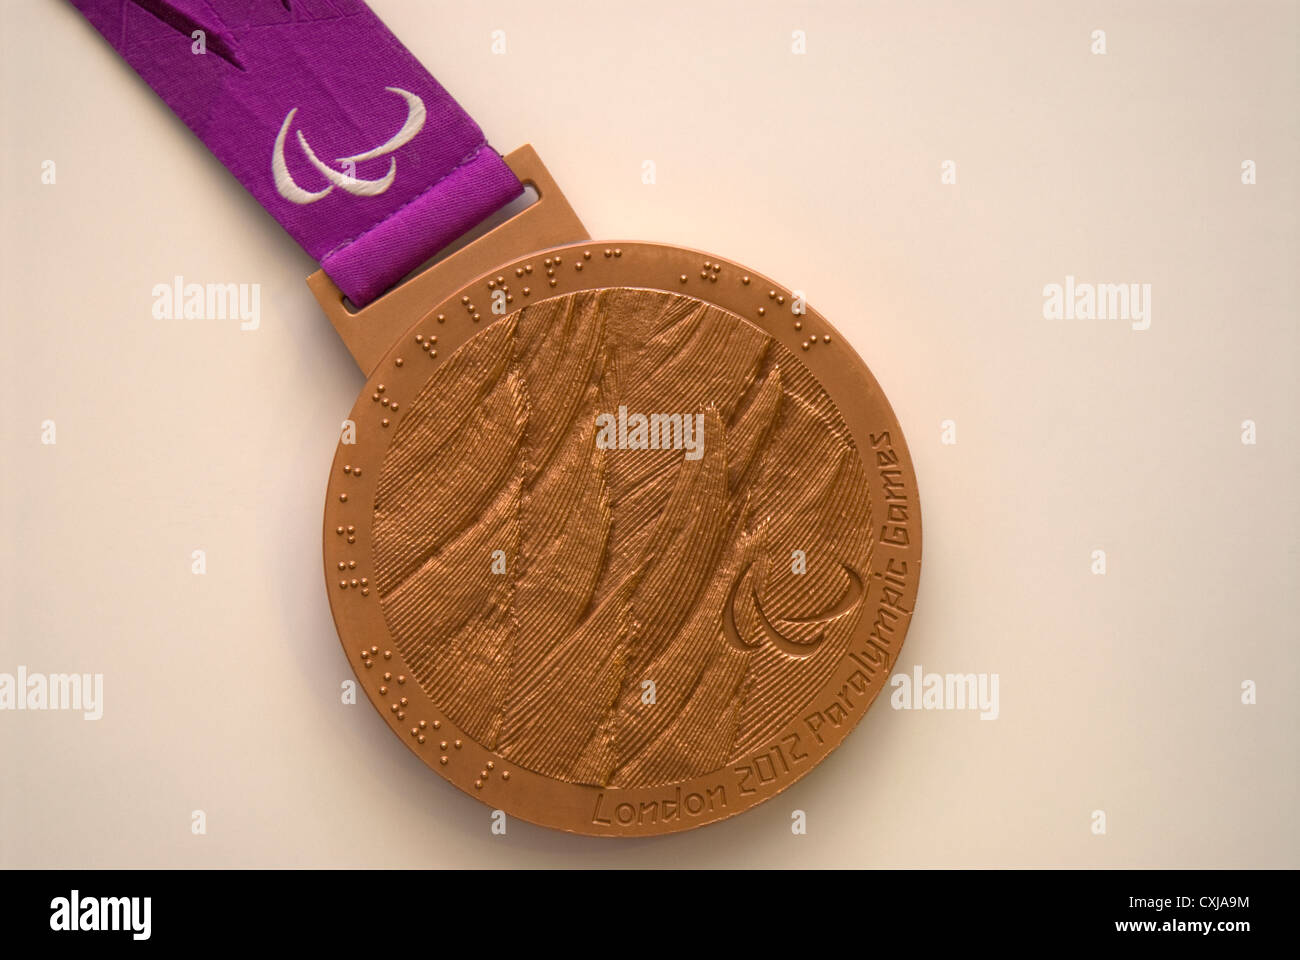 A remporté la médaille de bronze au Jeux paralympiques de 2012 à Londres par Olivia Breen. Banque D'Images